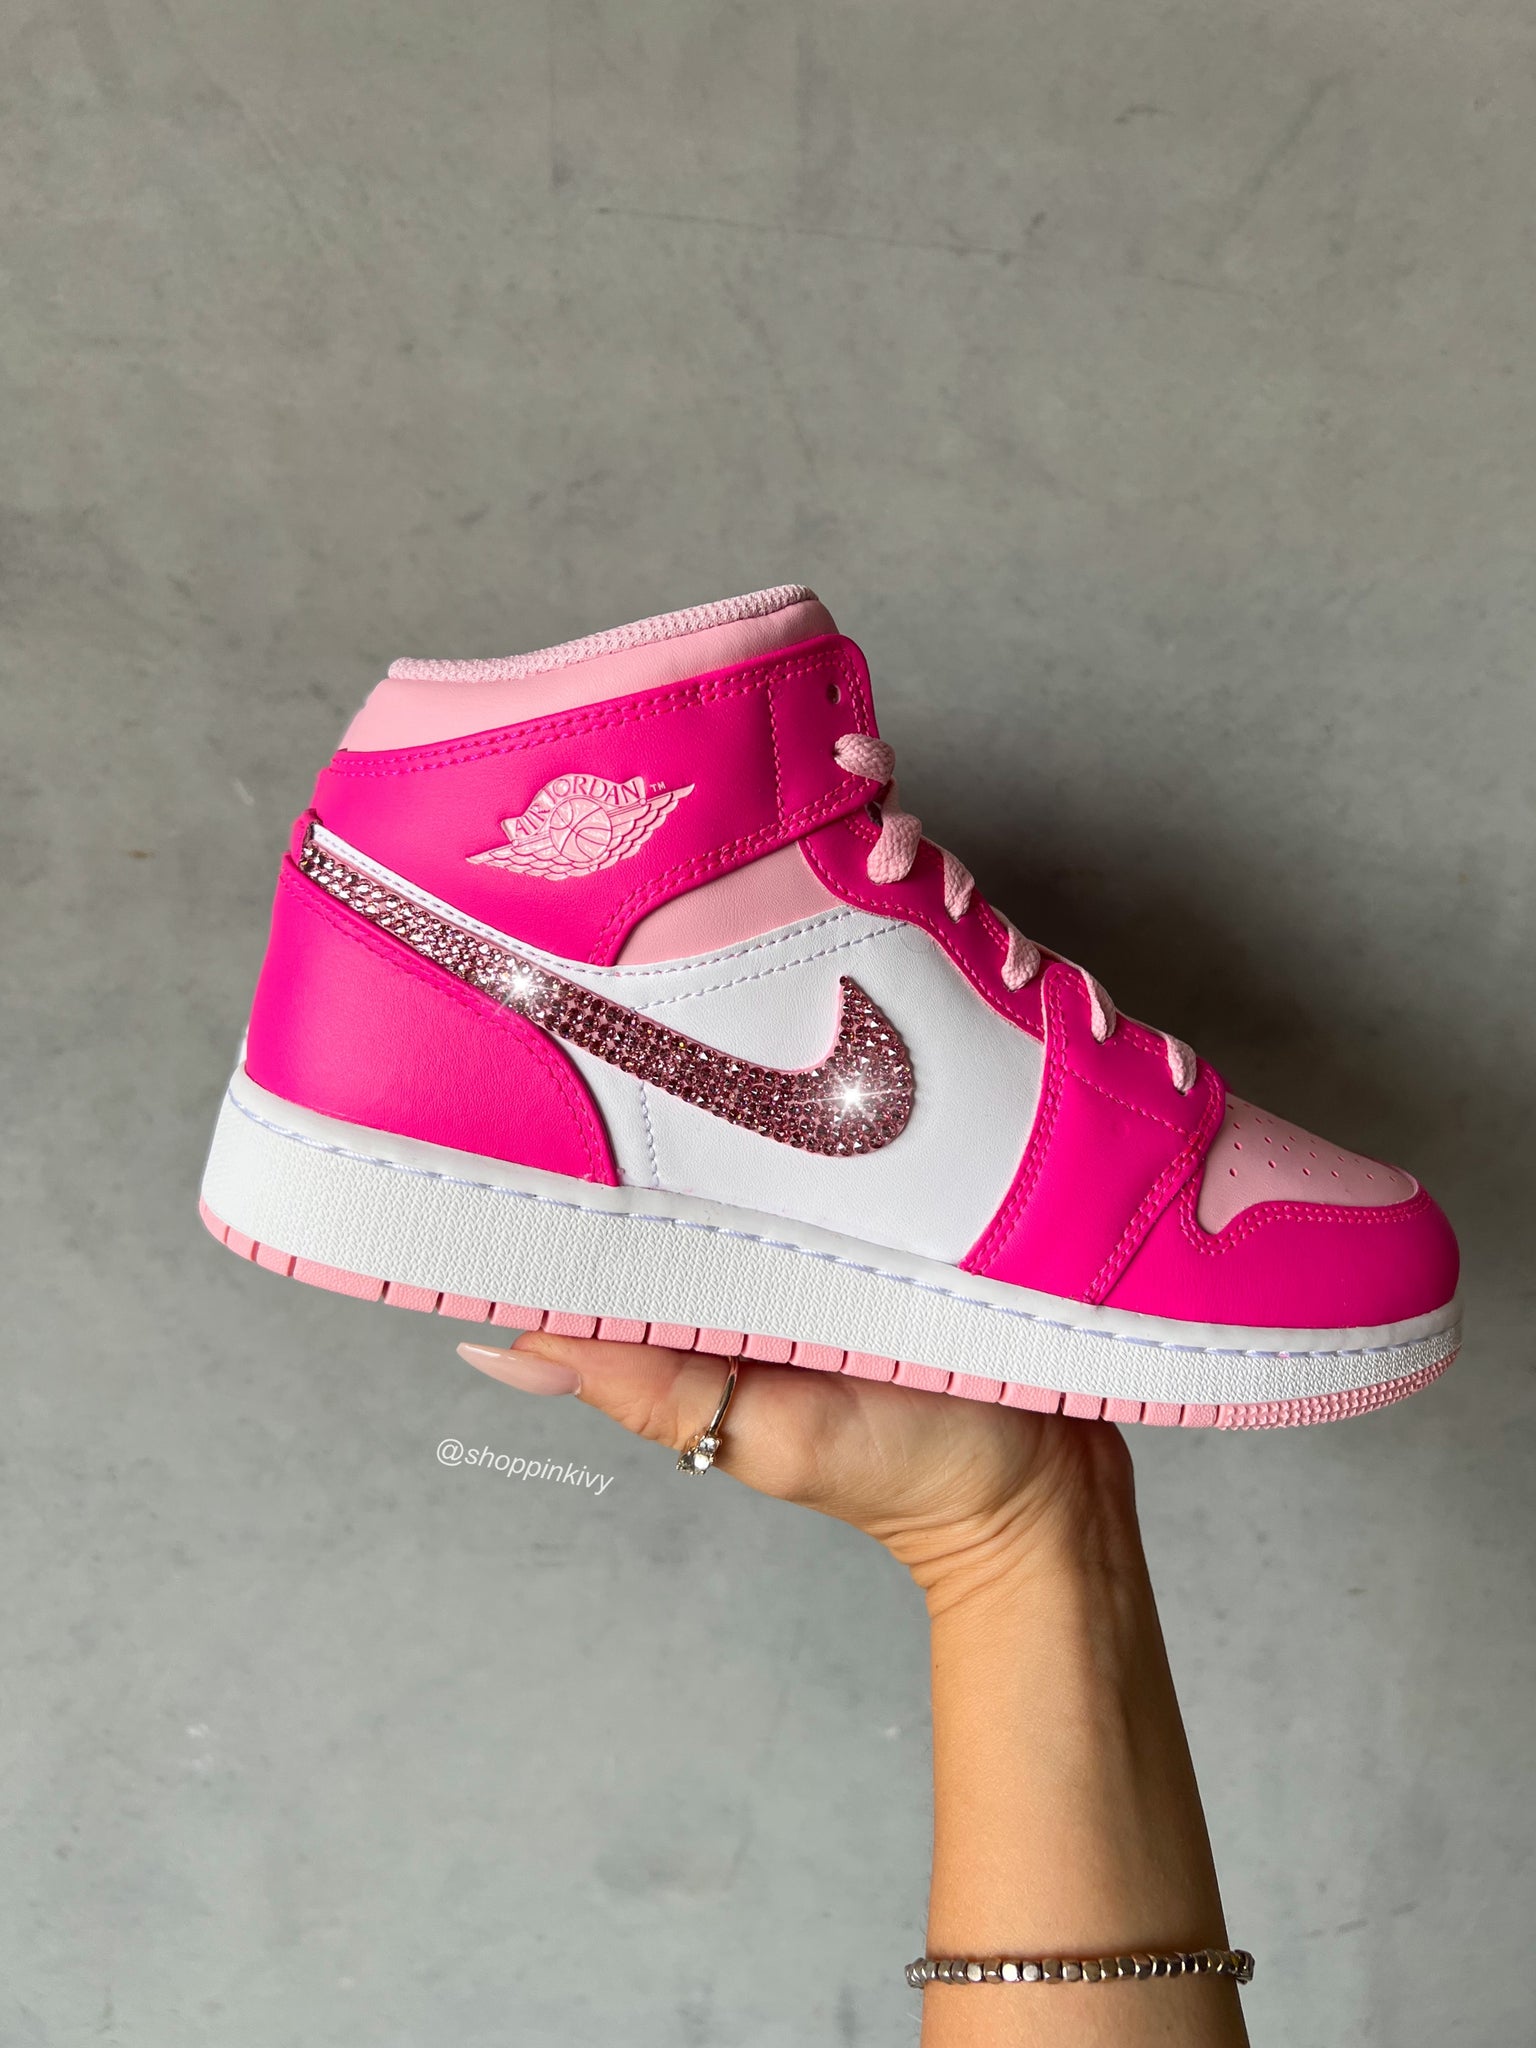 Pink Swarovski Women's Air Jordan 1 Mid Shoes – Pink Ivy